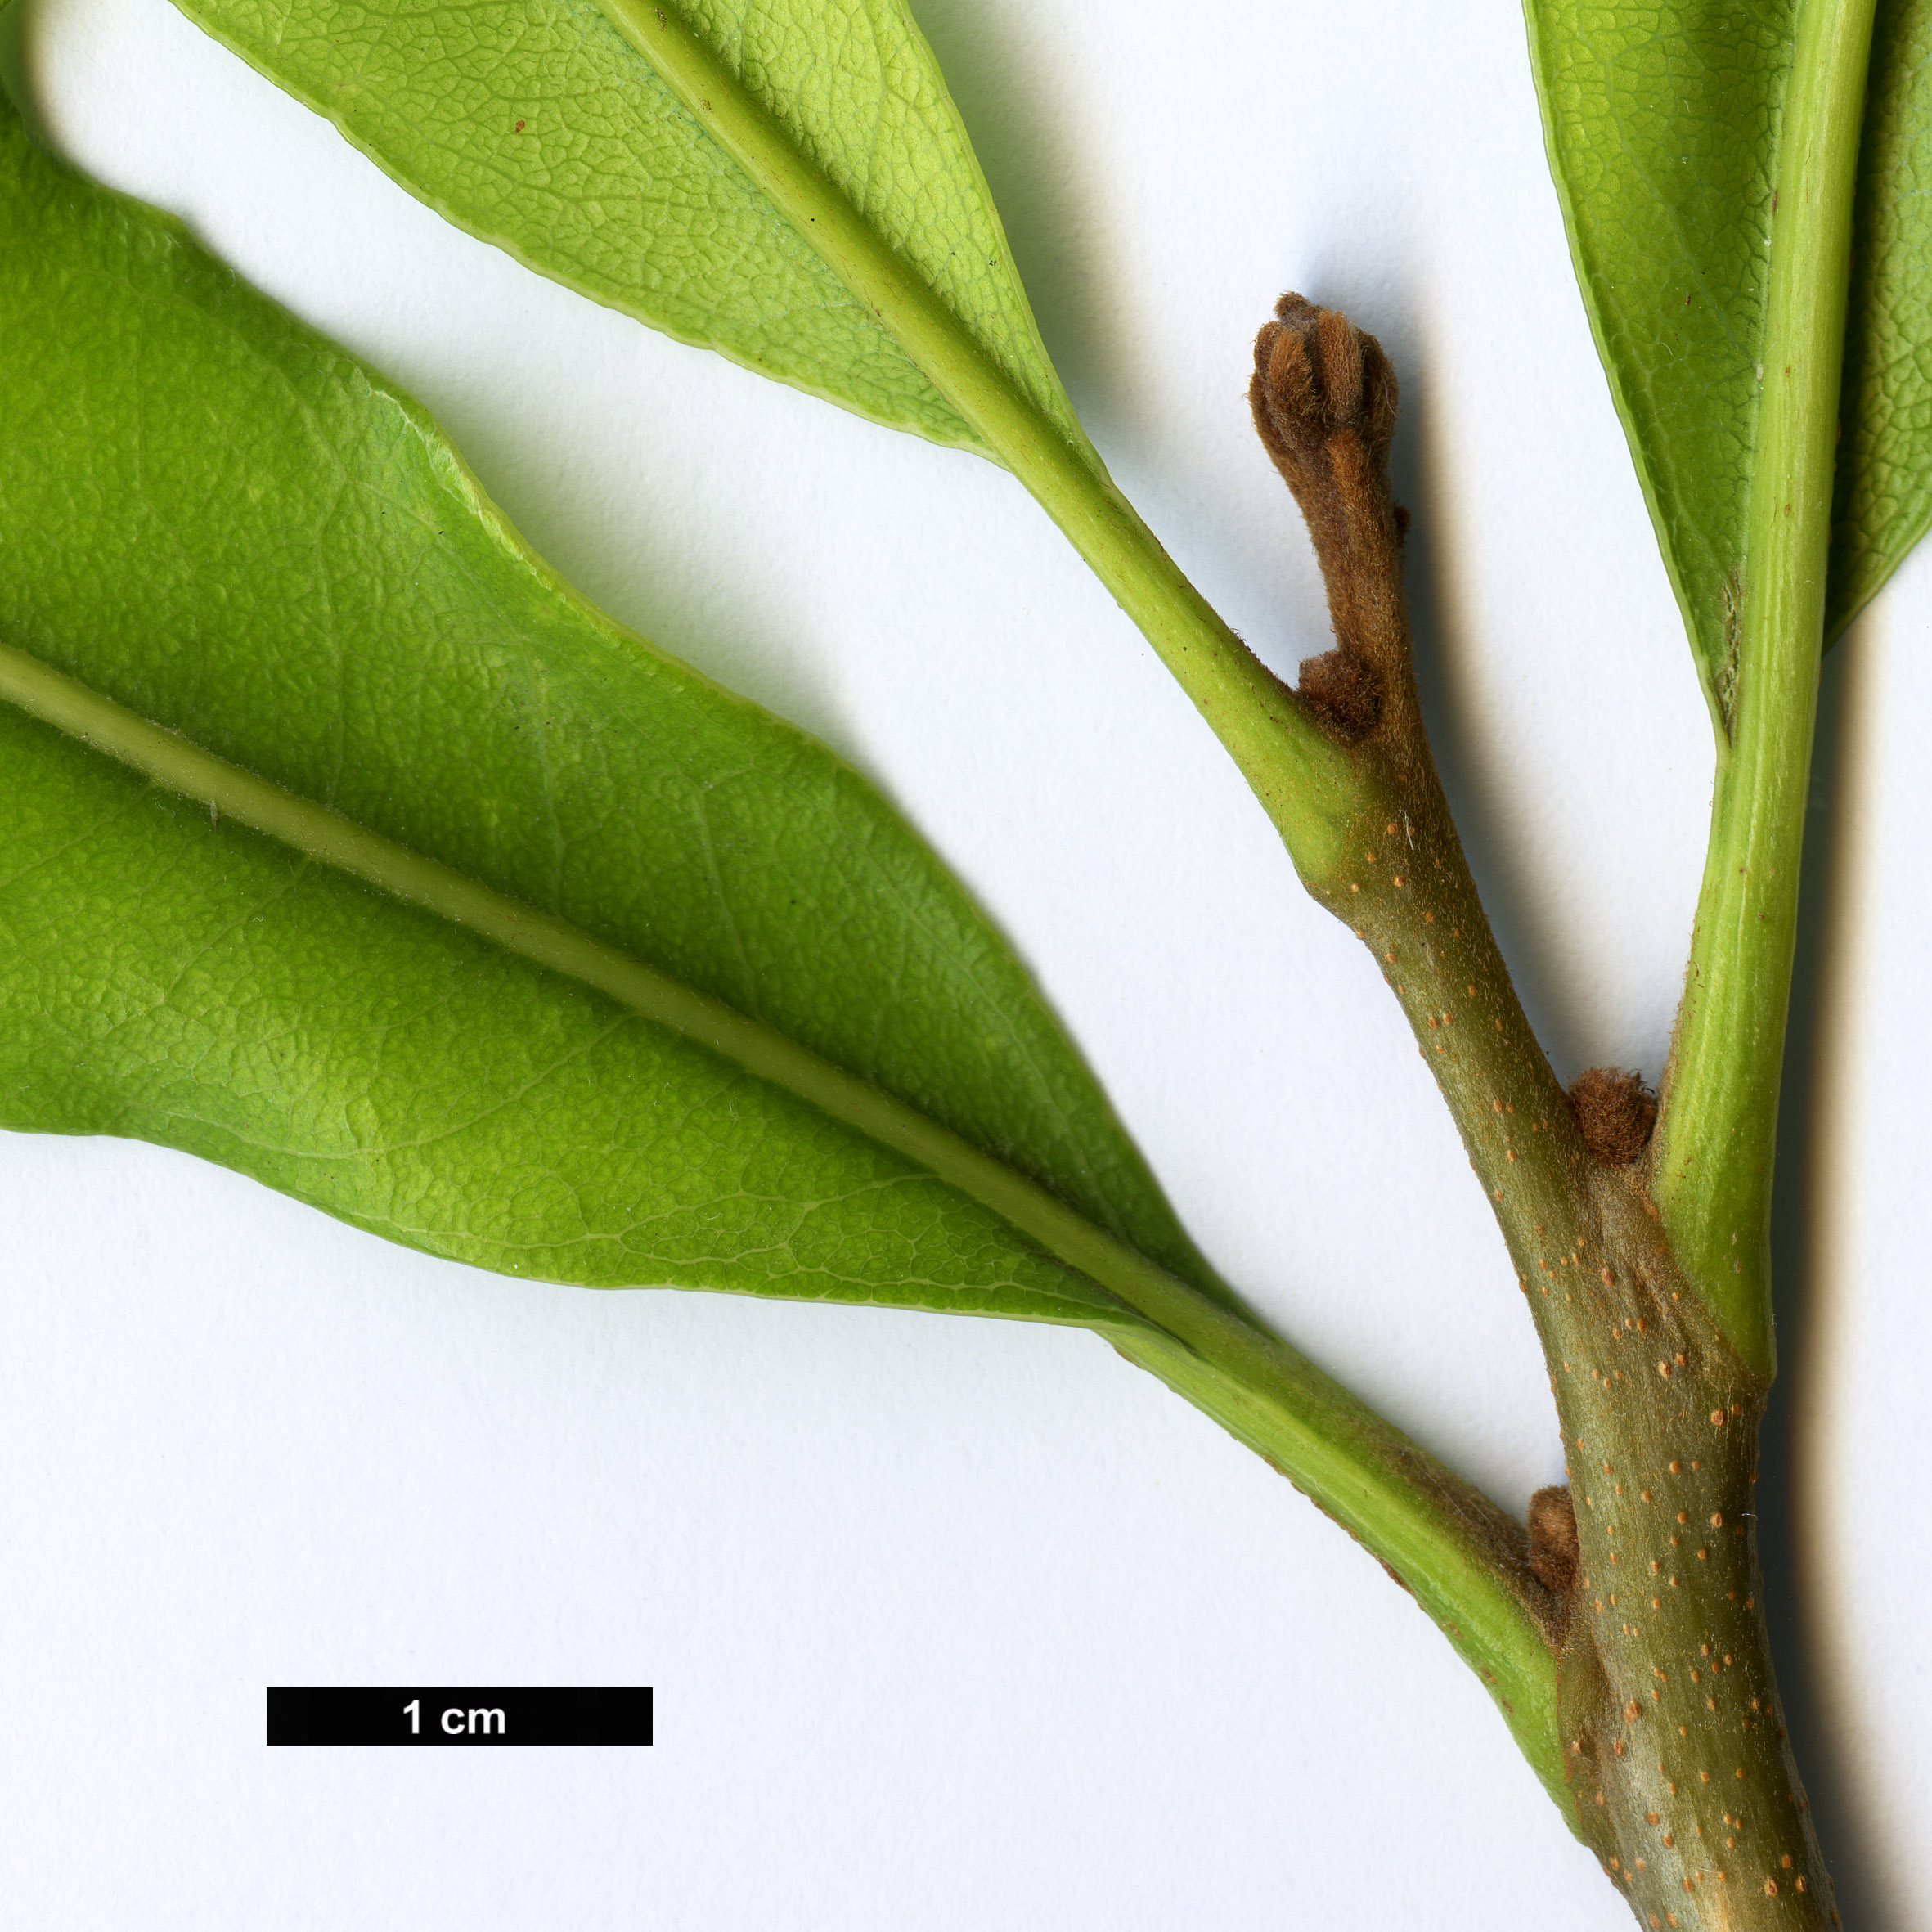 High resolution image: Family: Proteaceae - Genus: Stenocarpus - Taxon: sinuatus